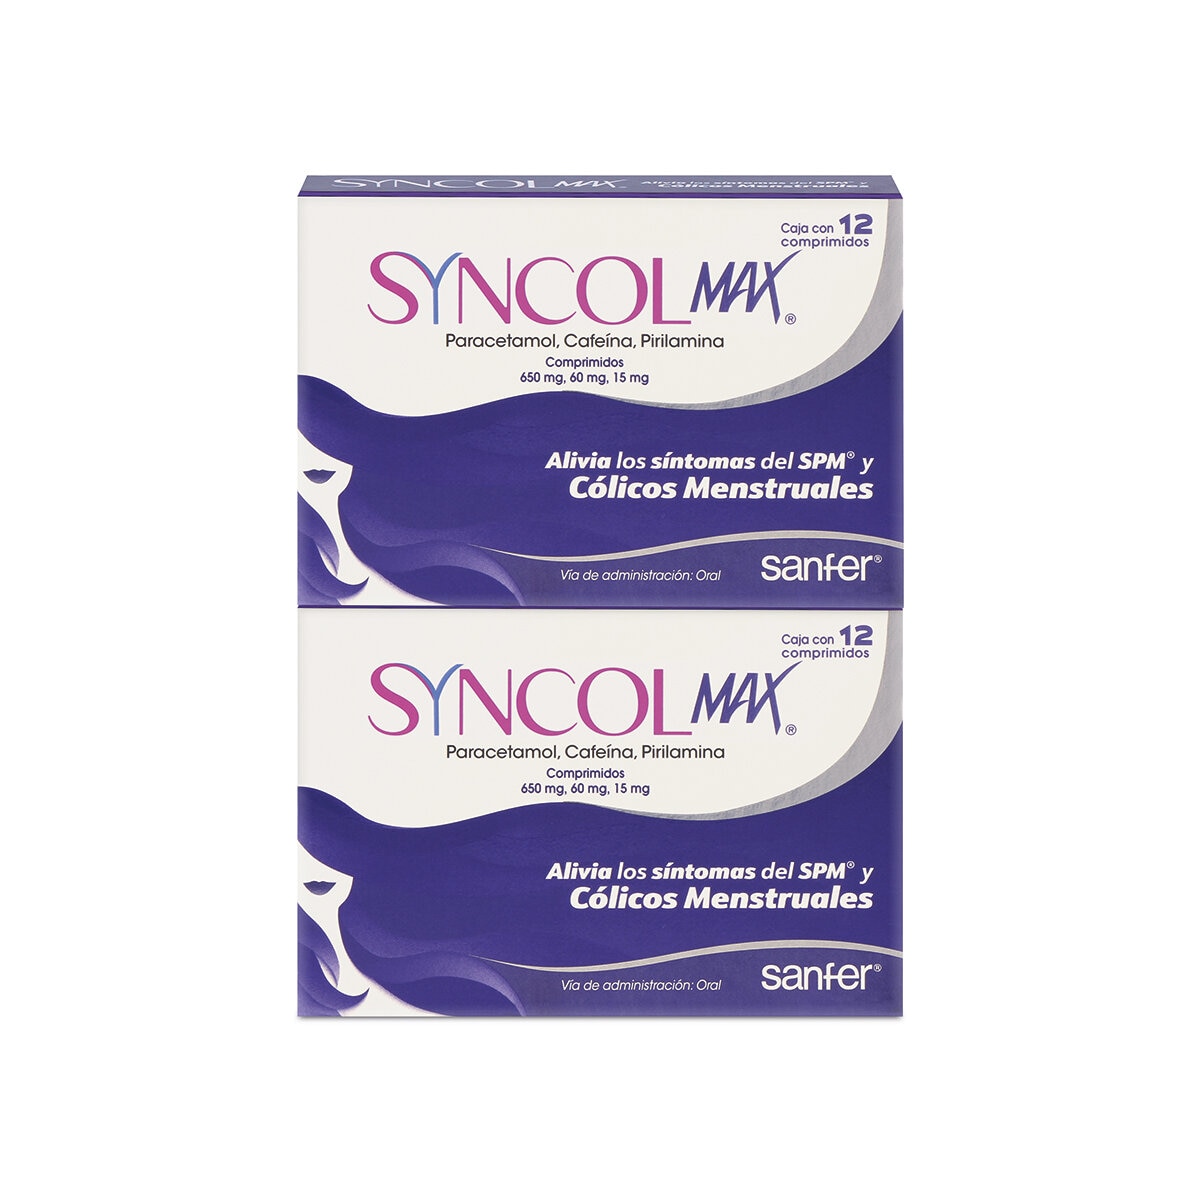 Syncol Max 2 Cajas con 12 Comprimidos c/u Paracetamol 650mg, Cafeína 60mg y Pirilamina 15mg